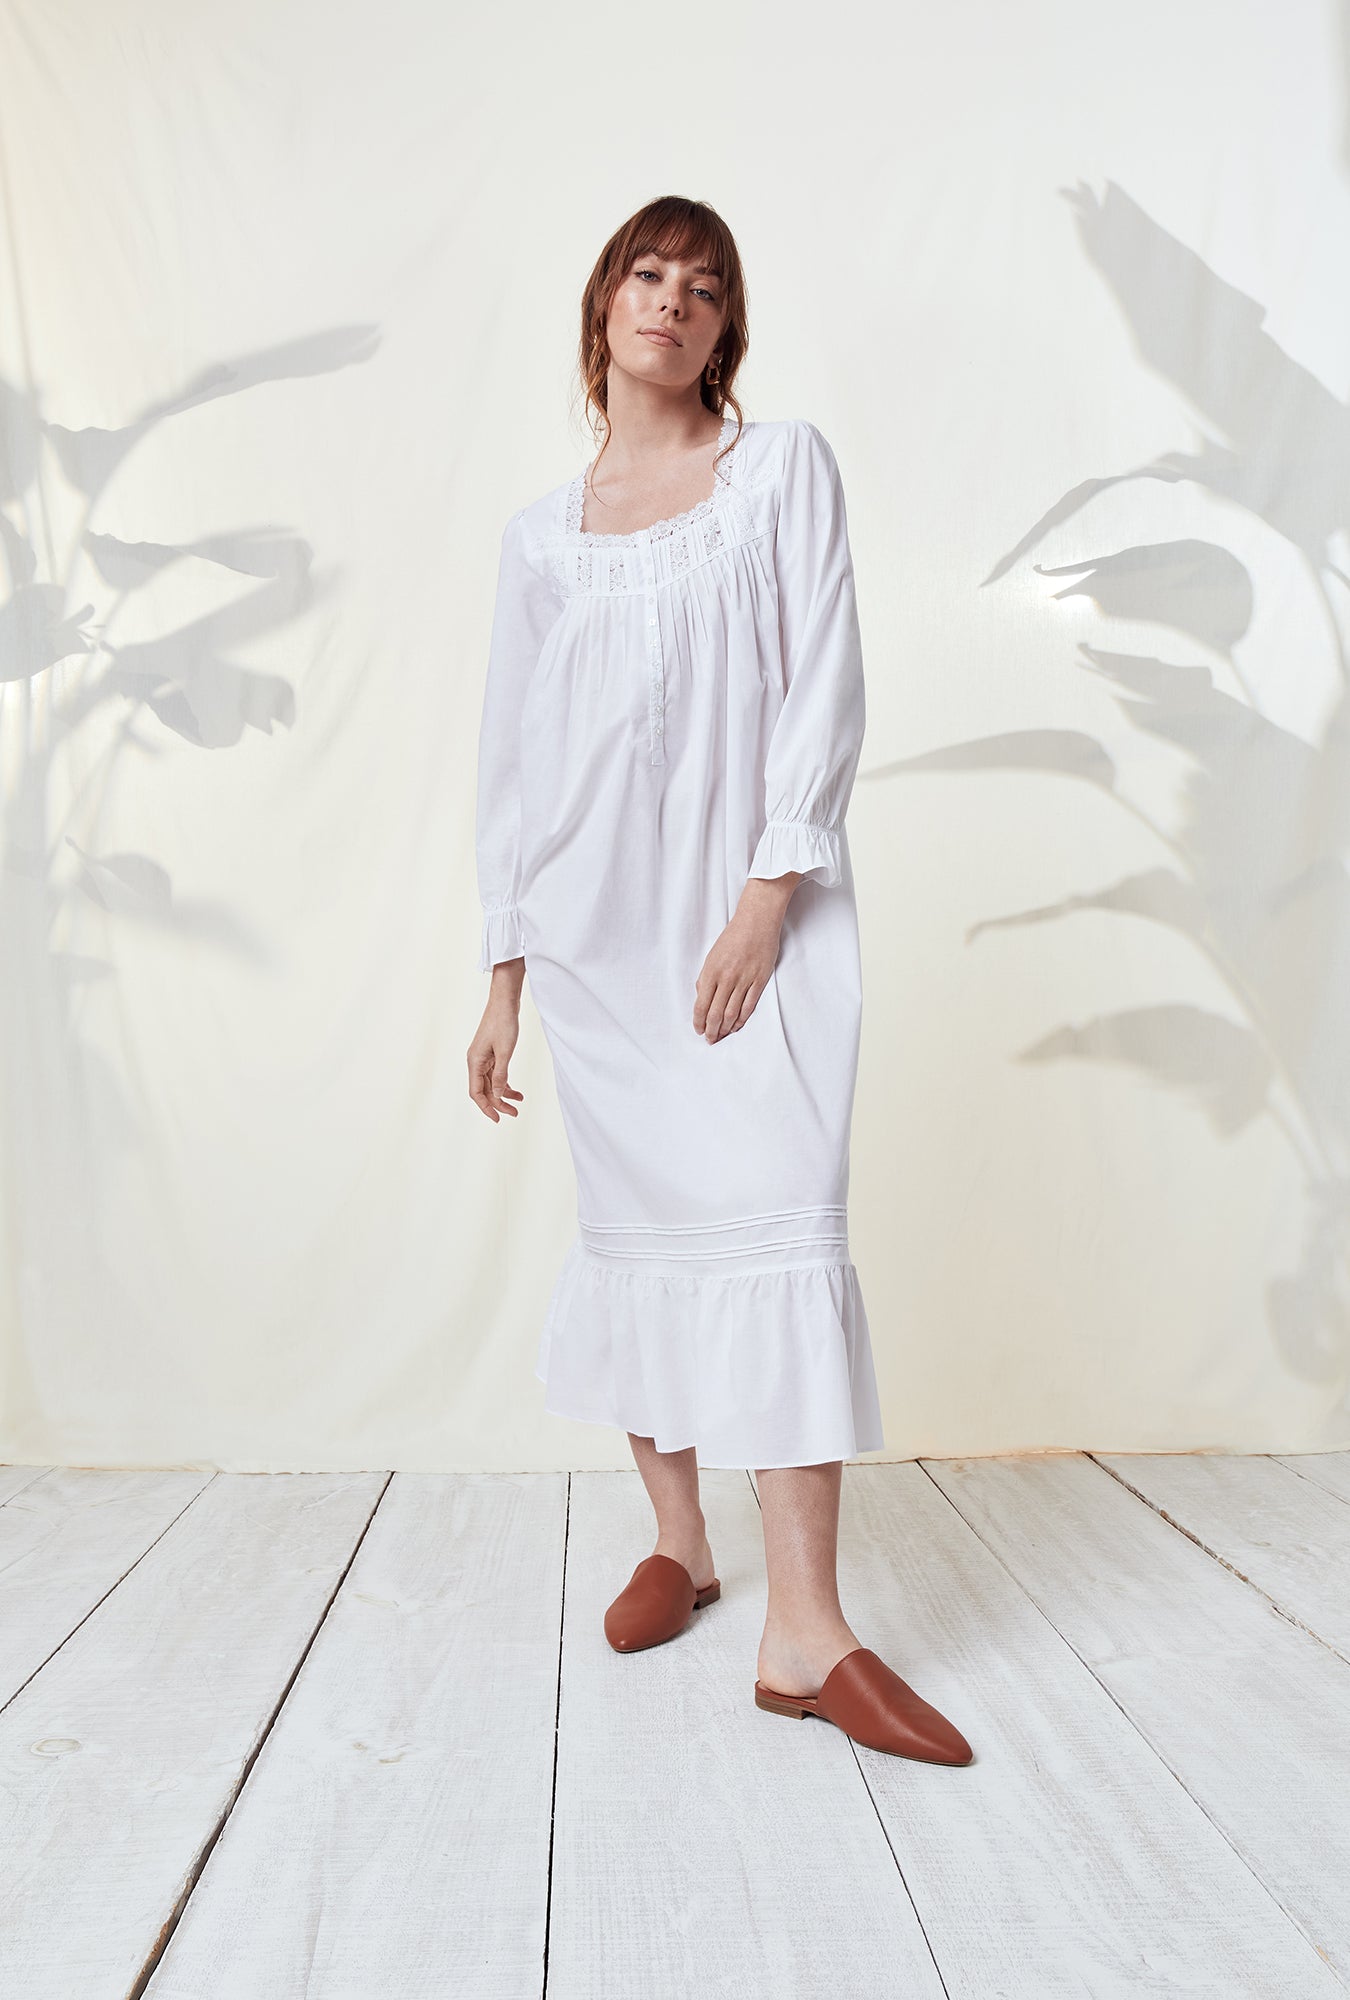 Eileen West Women's Fleece Waltz Long-Sleeve Nightgown - Macy's